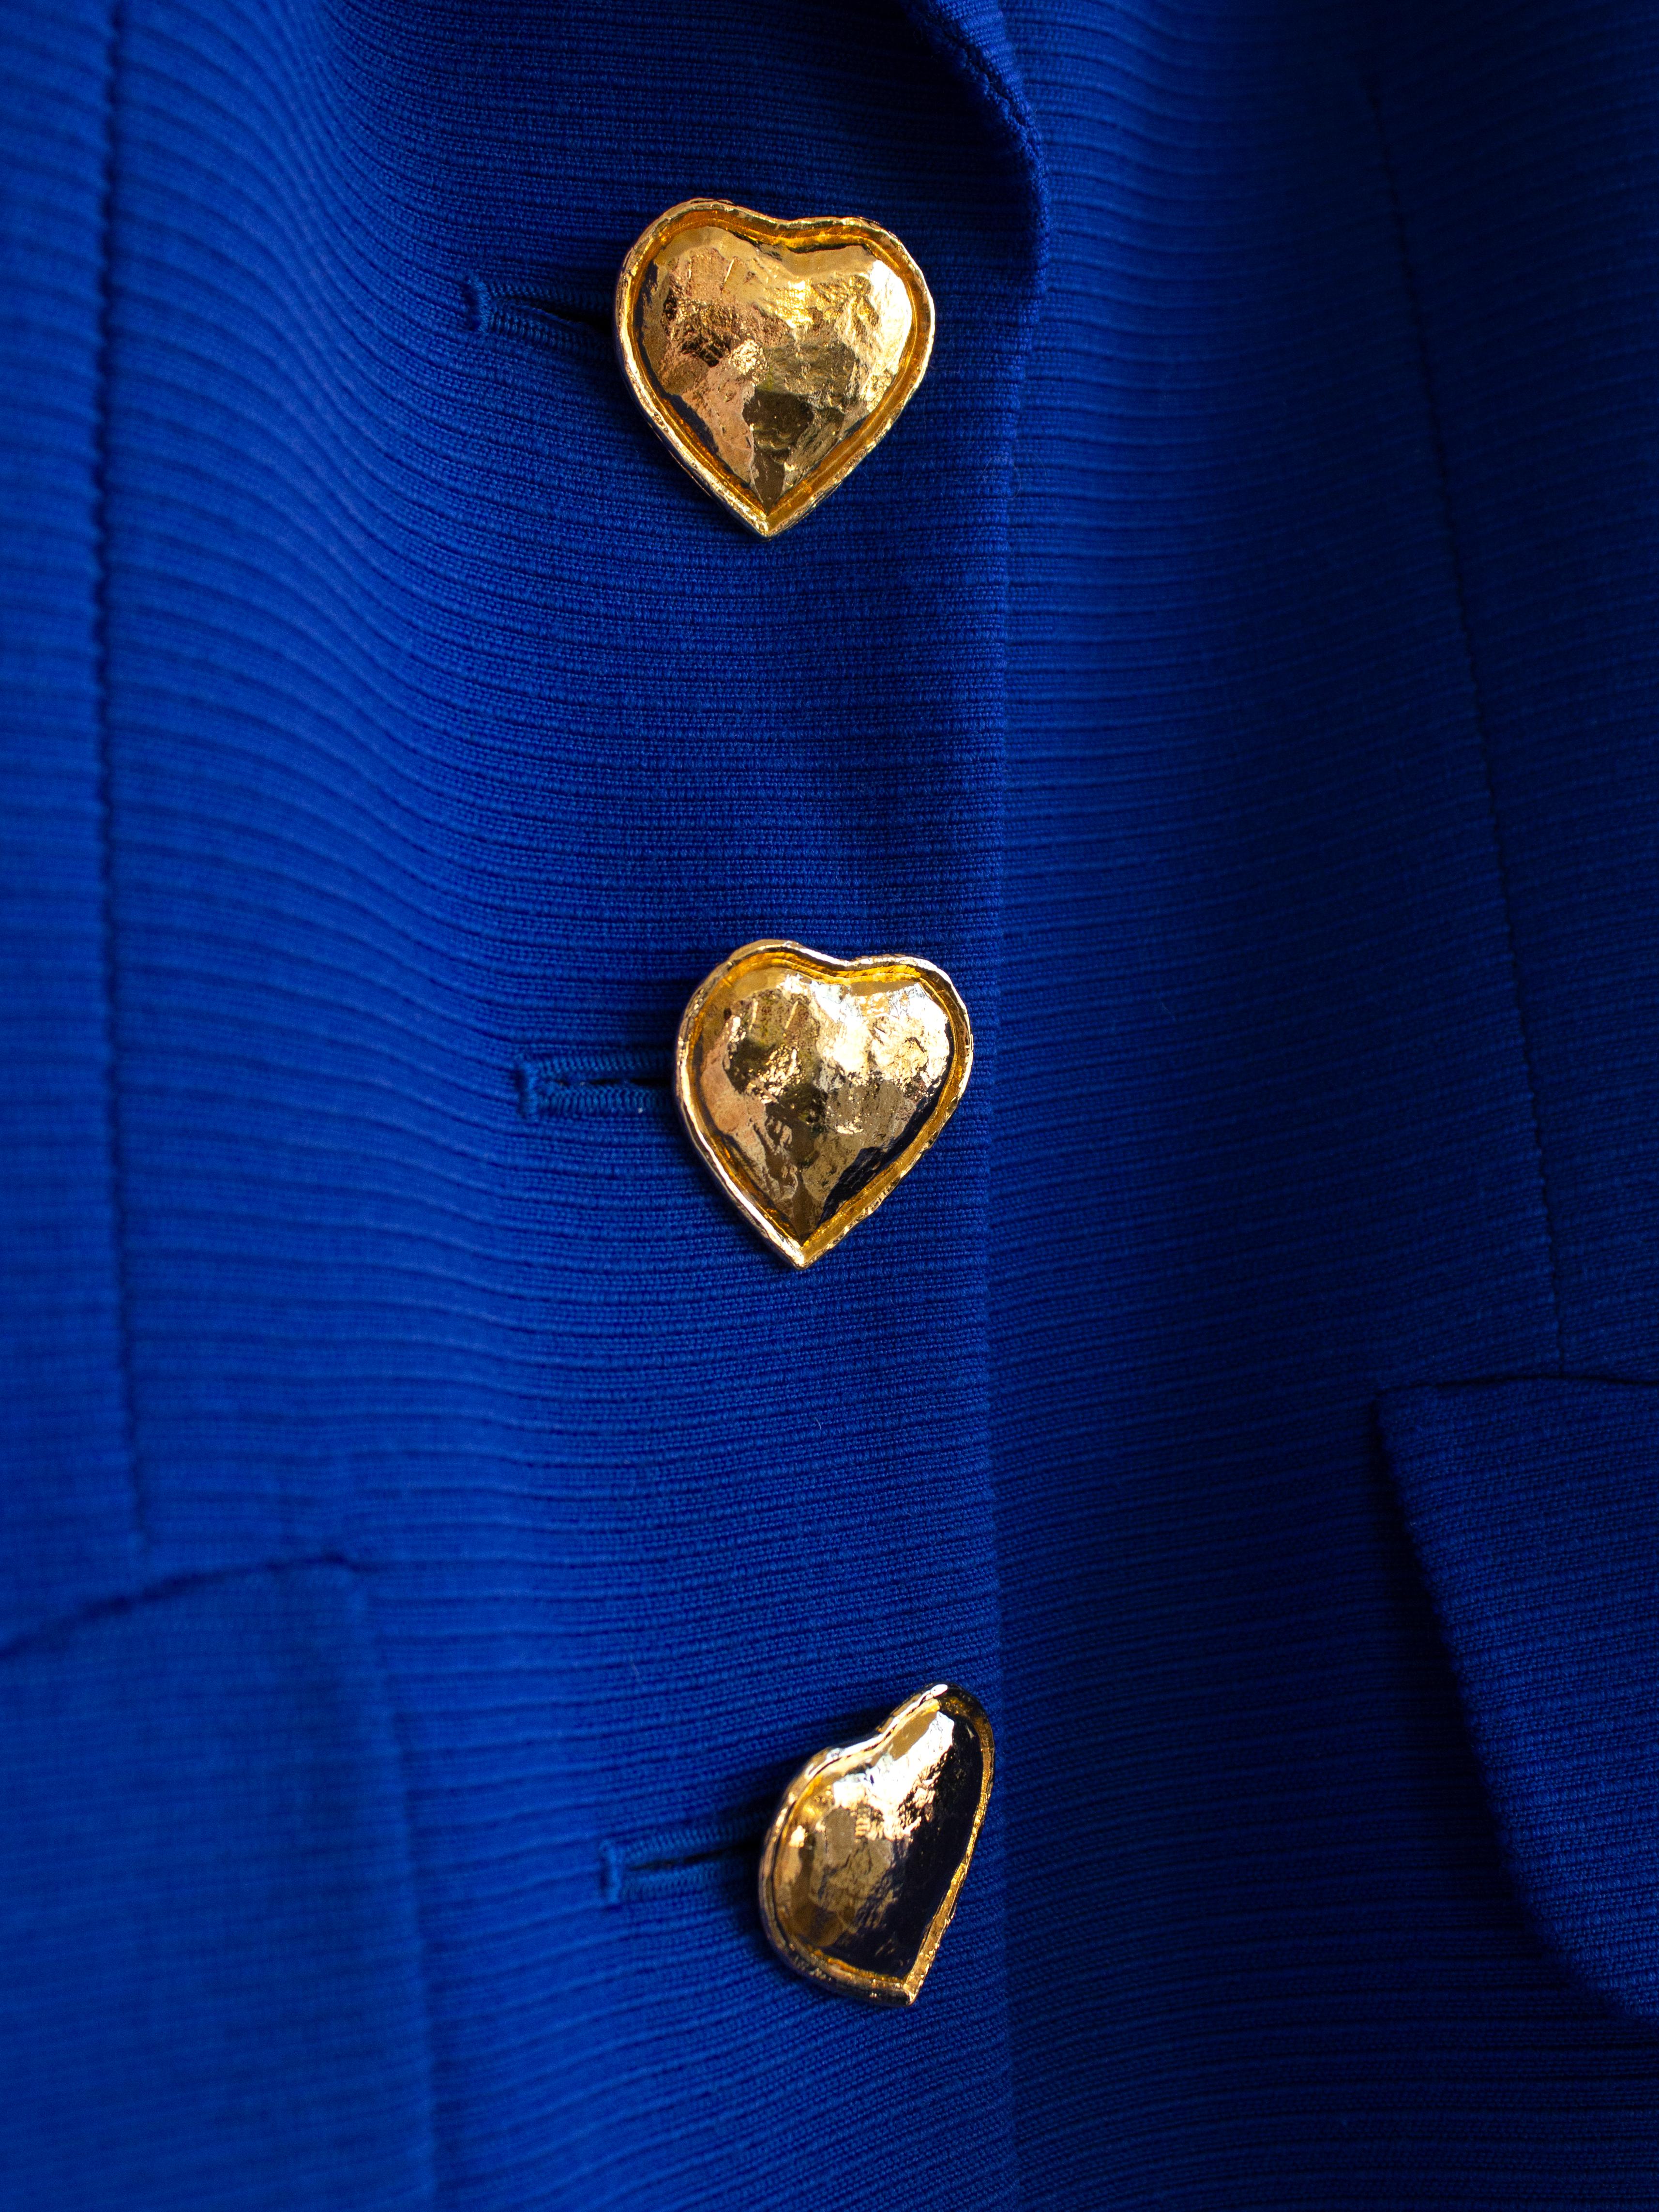 Yves Saint Laurent Encore Vintage S/S 1995 Royal Blue Gold Hearts Jacket Suit For Sale 4